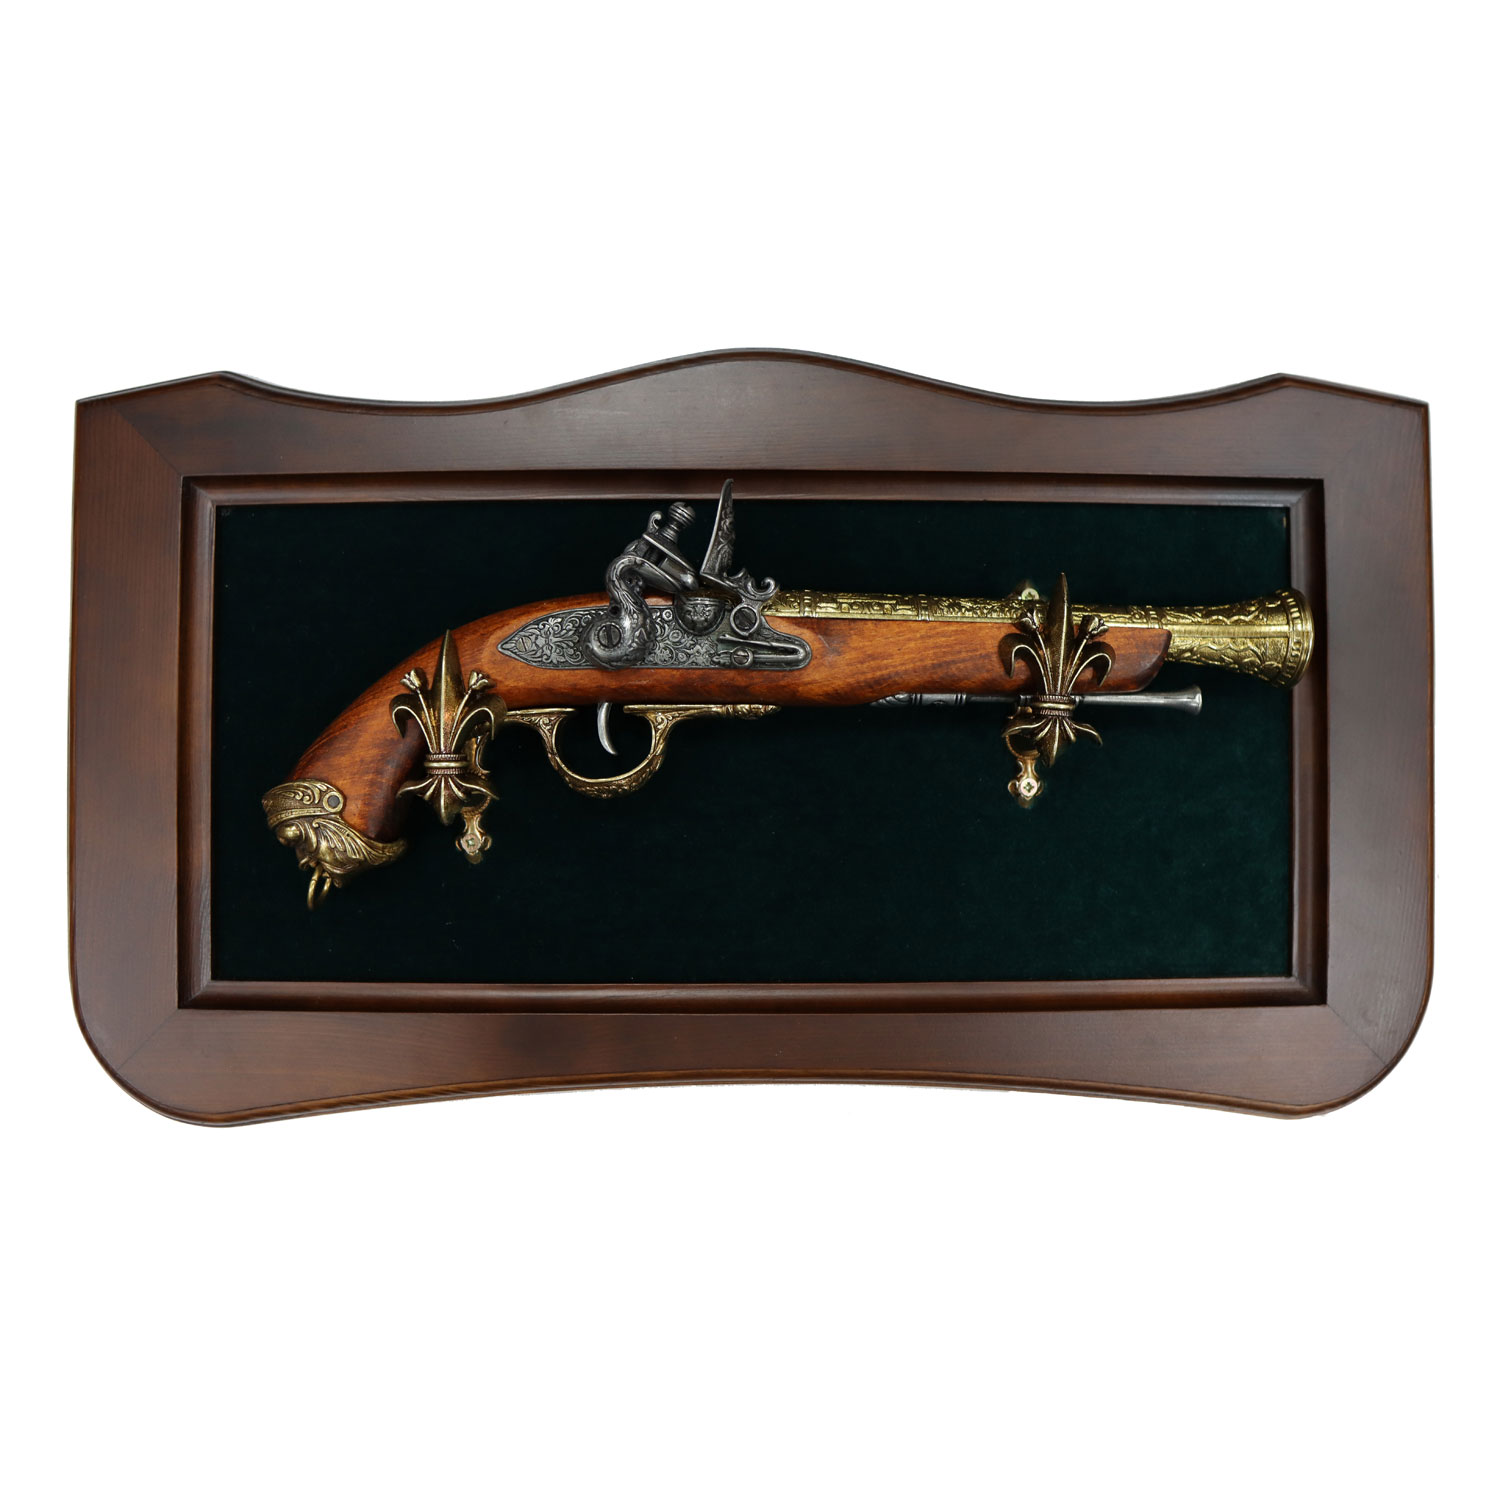 Итальянский пистолет XVIIIв. (латунь) на бархатном панно. Интерьерная композиция.